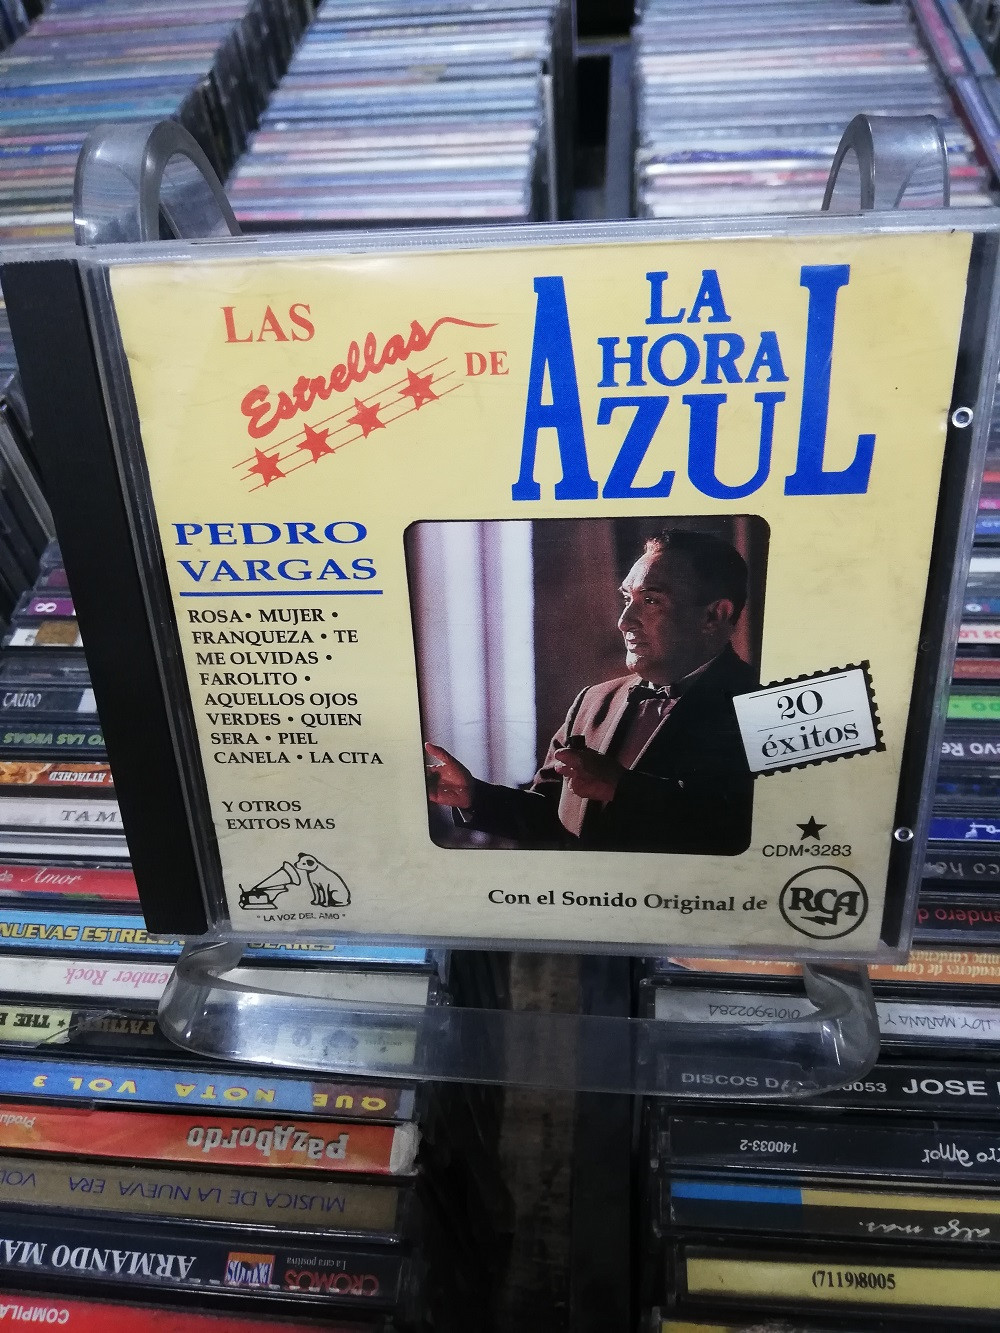 Imagen CD PEDRO VARGAS - LA HORA AZUL